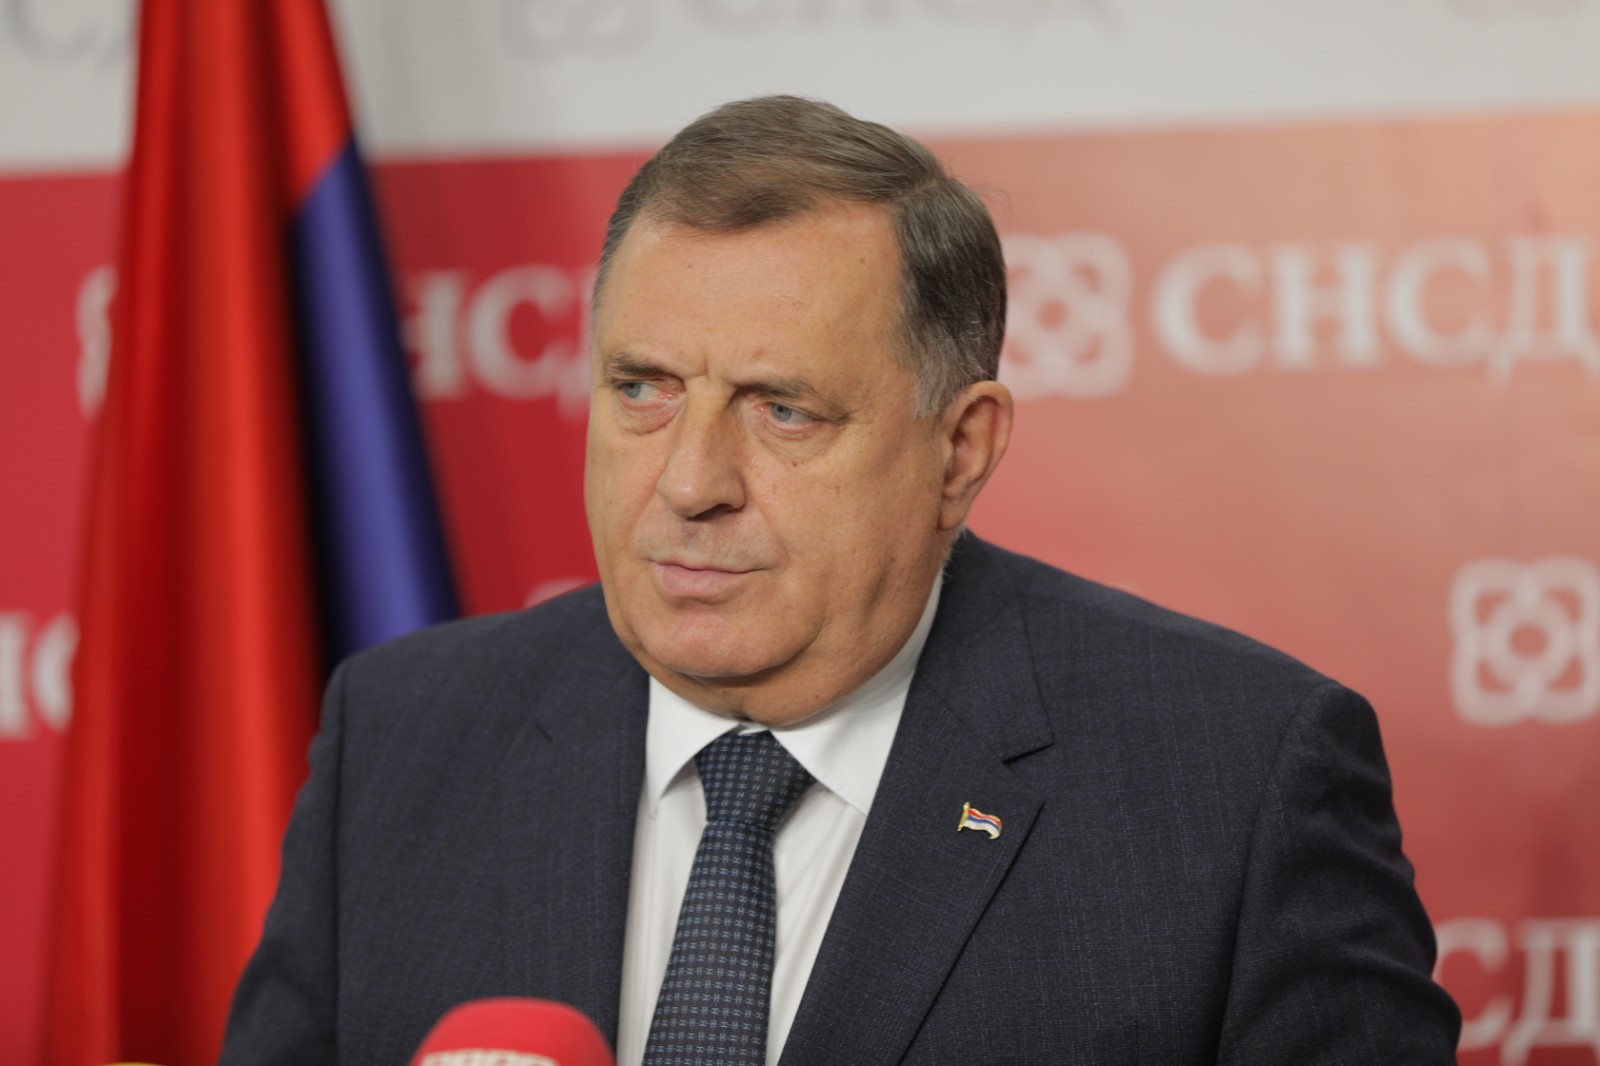 “DOĆI ĆE I VAMA KRAJ” Dodik prijetio novinarima BN da će ih izbaciti sa presa (VIDEO)